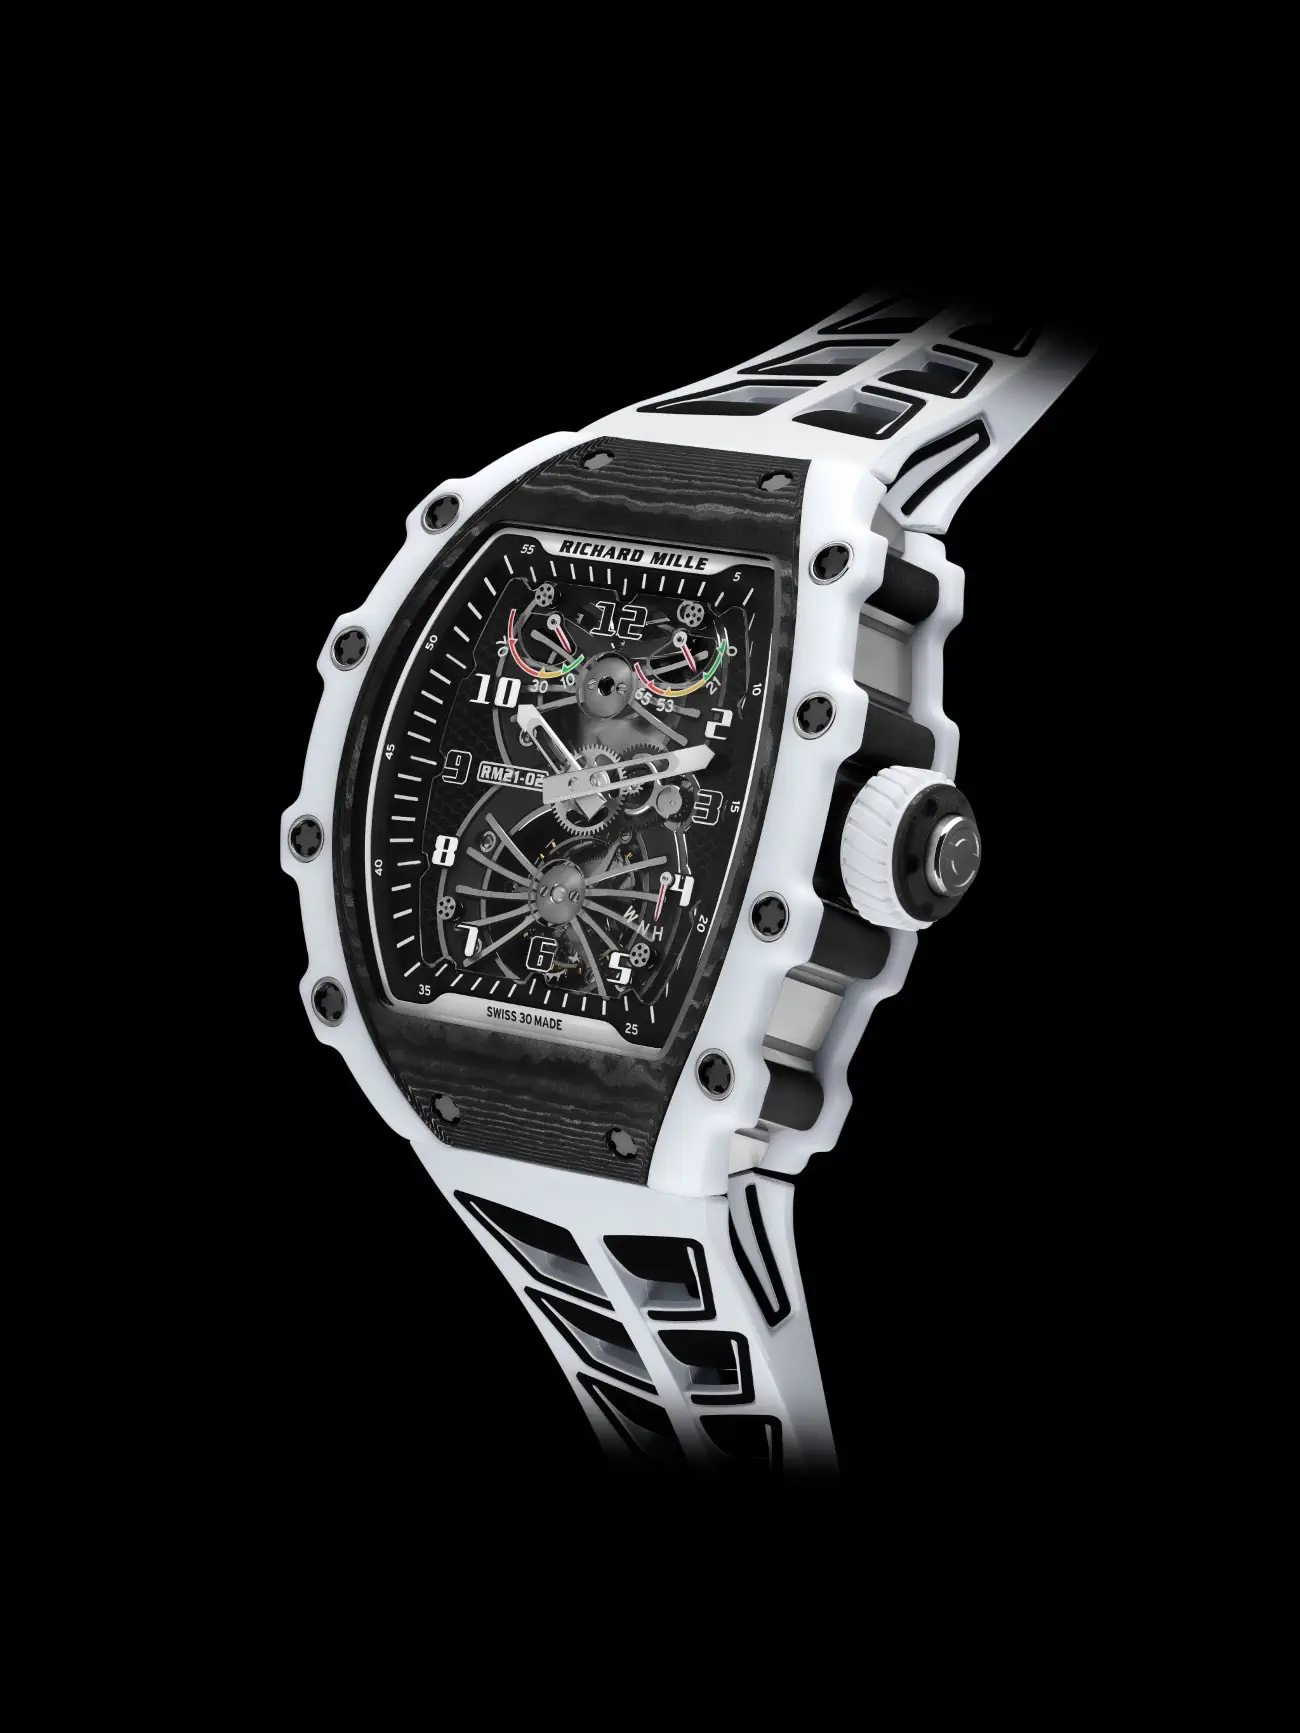 Richard Mille elevates watchmaking with the RM 21-02 Tourbillon Aerodyne